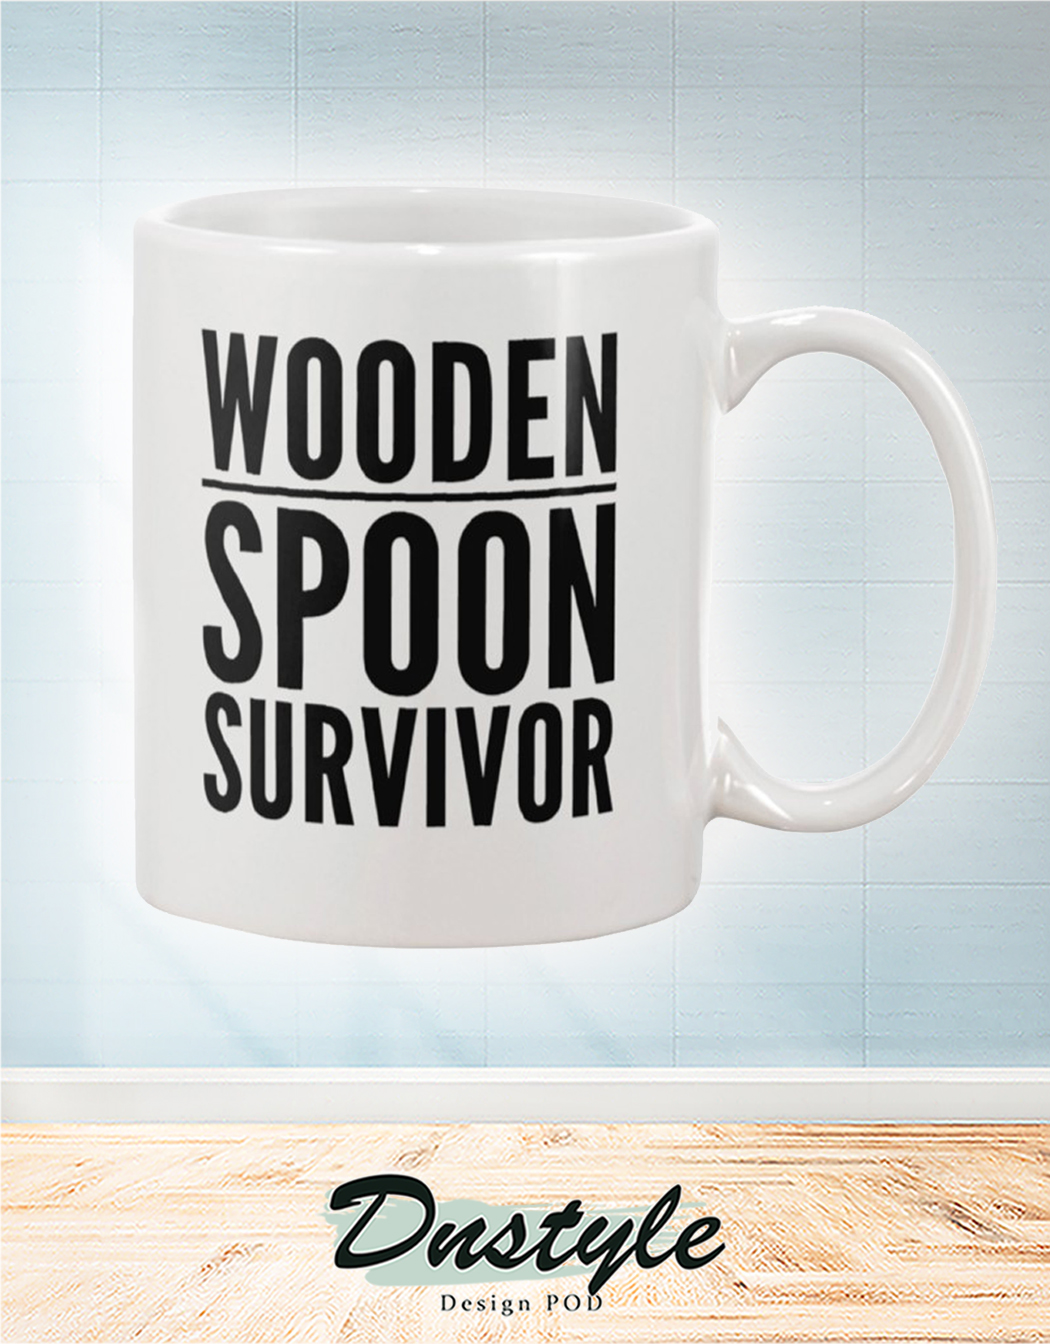 Wooden spoon survivor mug